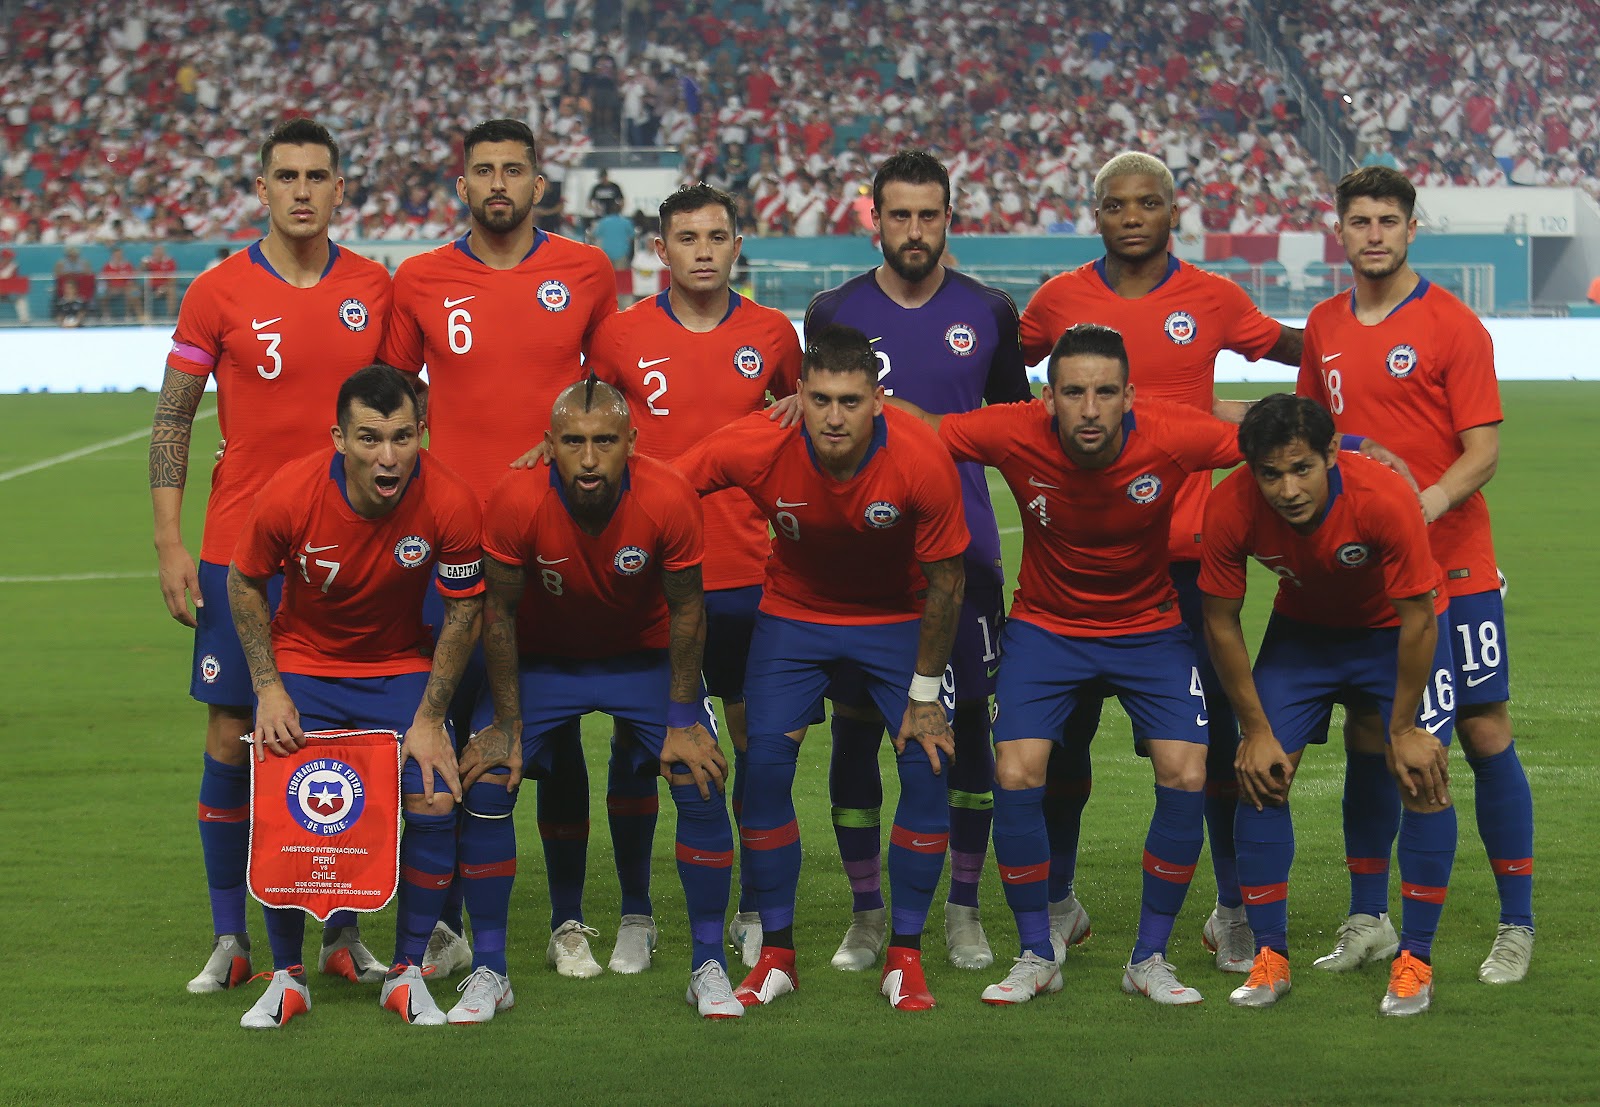 Formación de Chile ante Perú, amistoso disputado el 12 de octubre de 2018